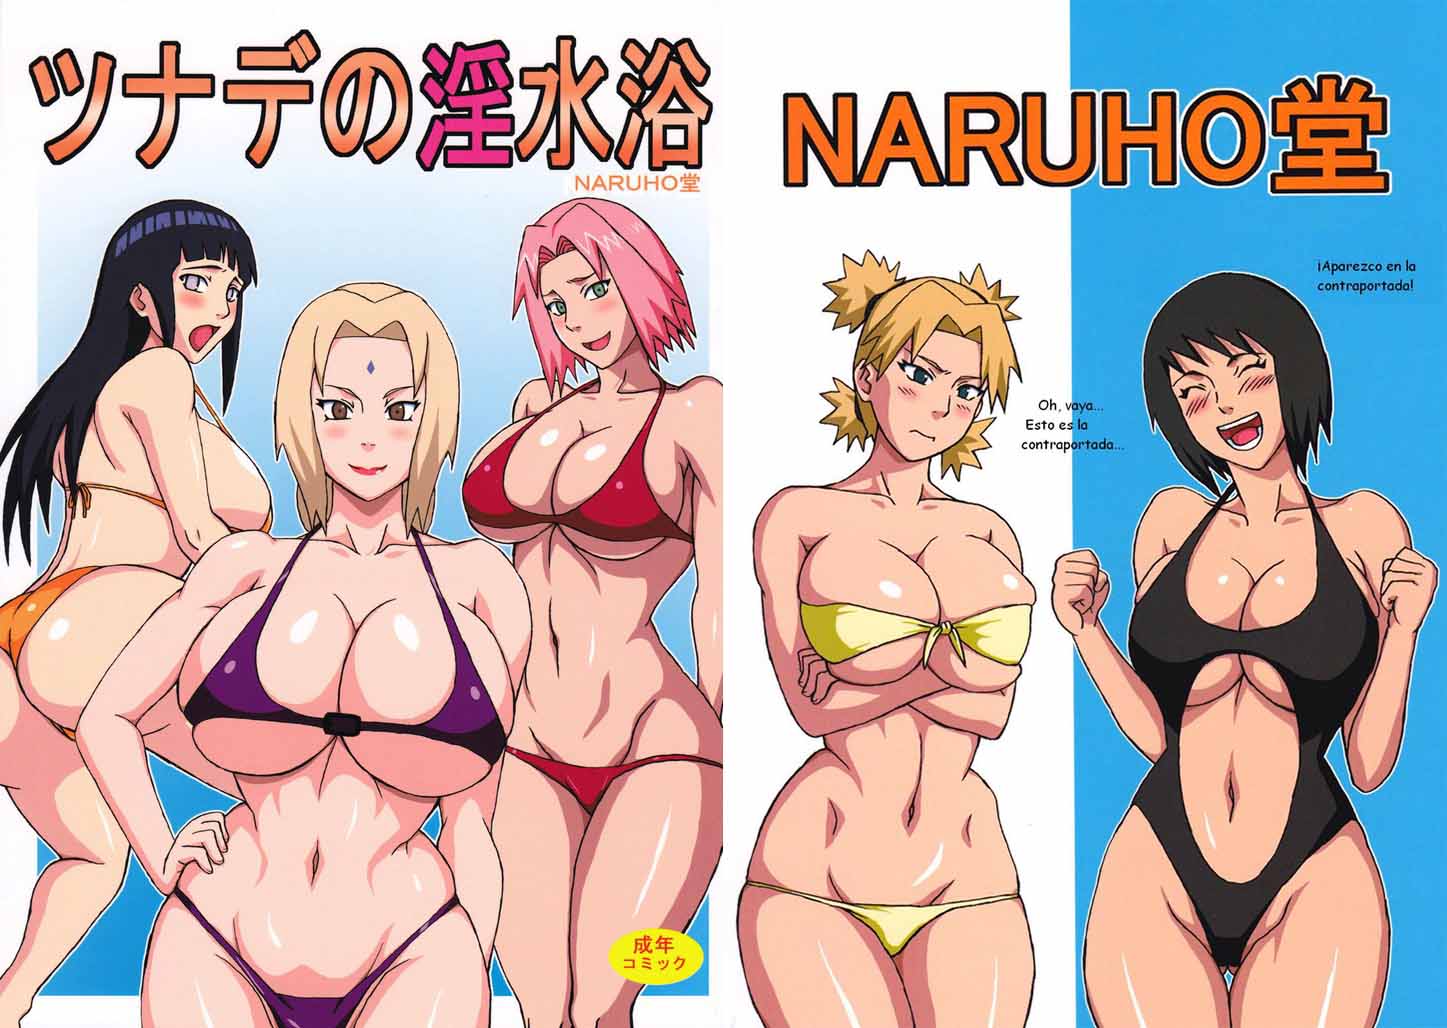 Comic Porno Naruto Hinata Sakura desnudas imagen imagen Foto